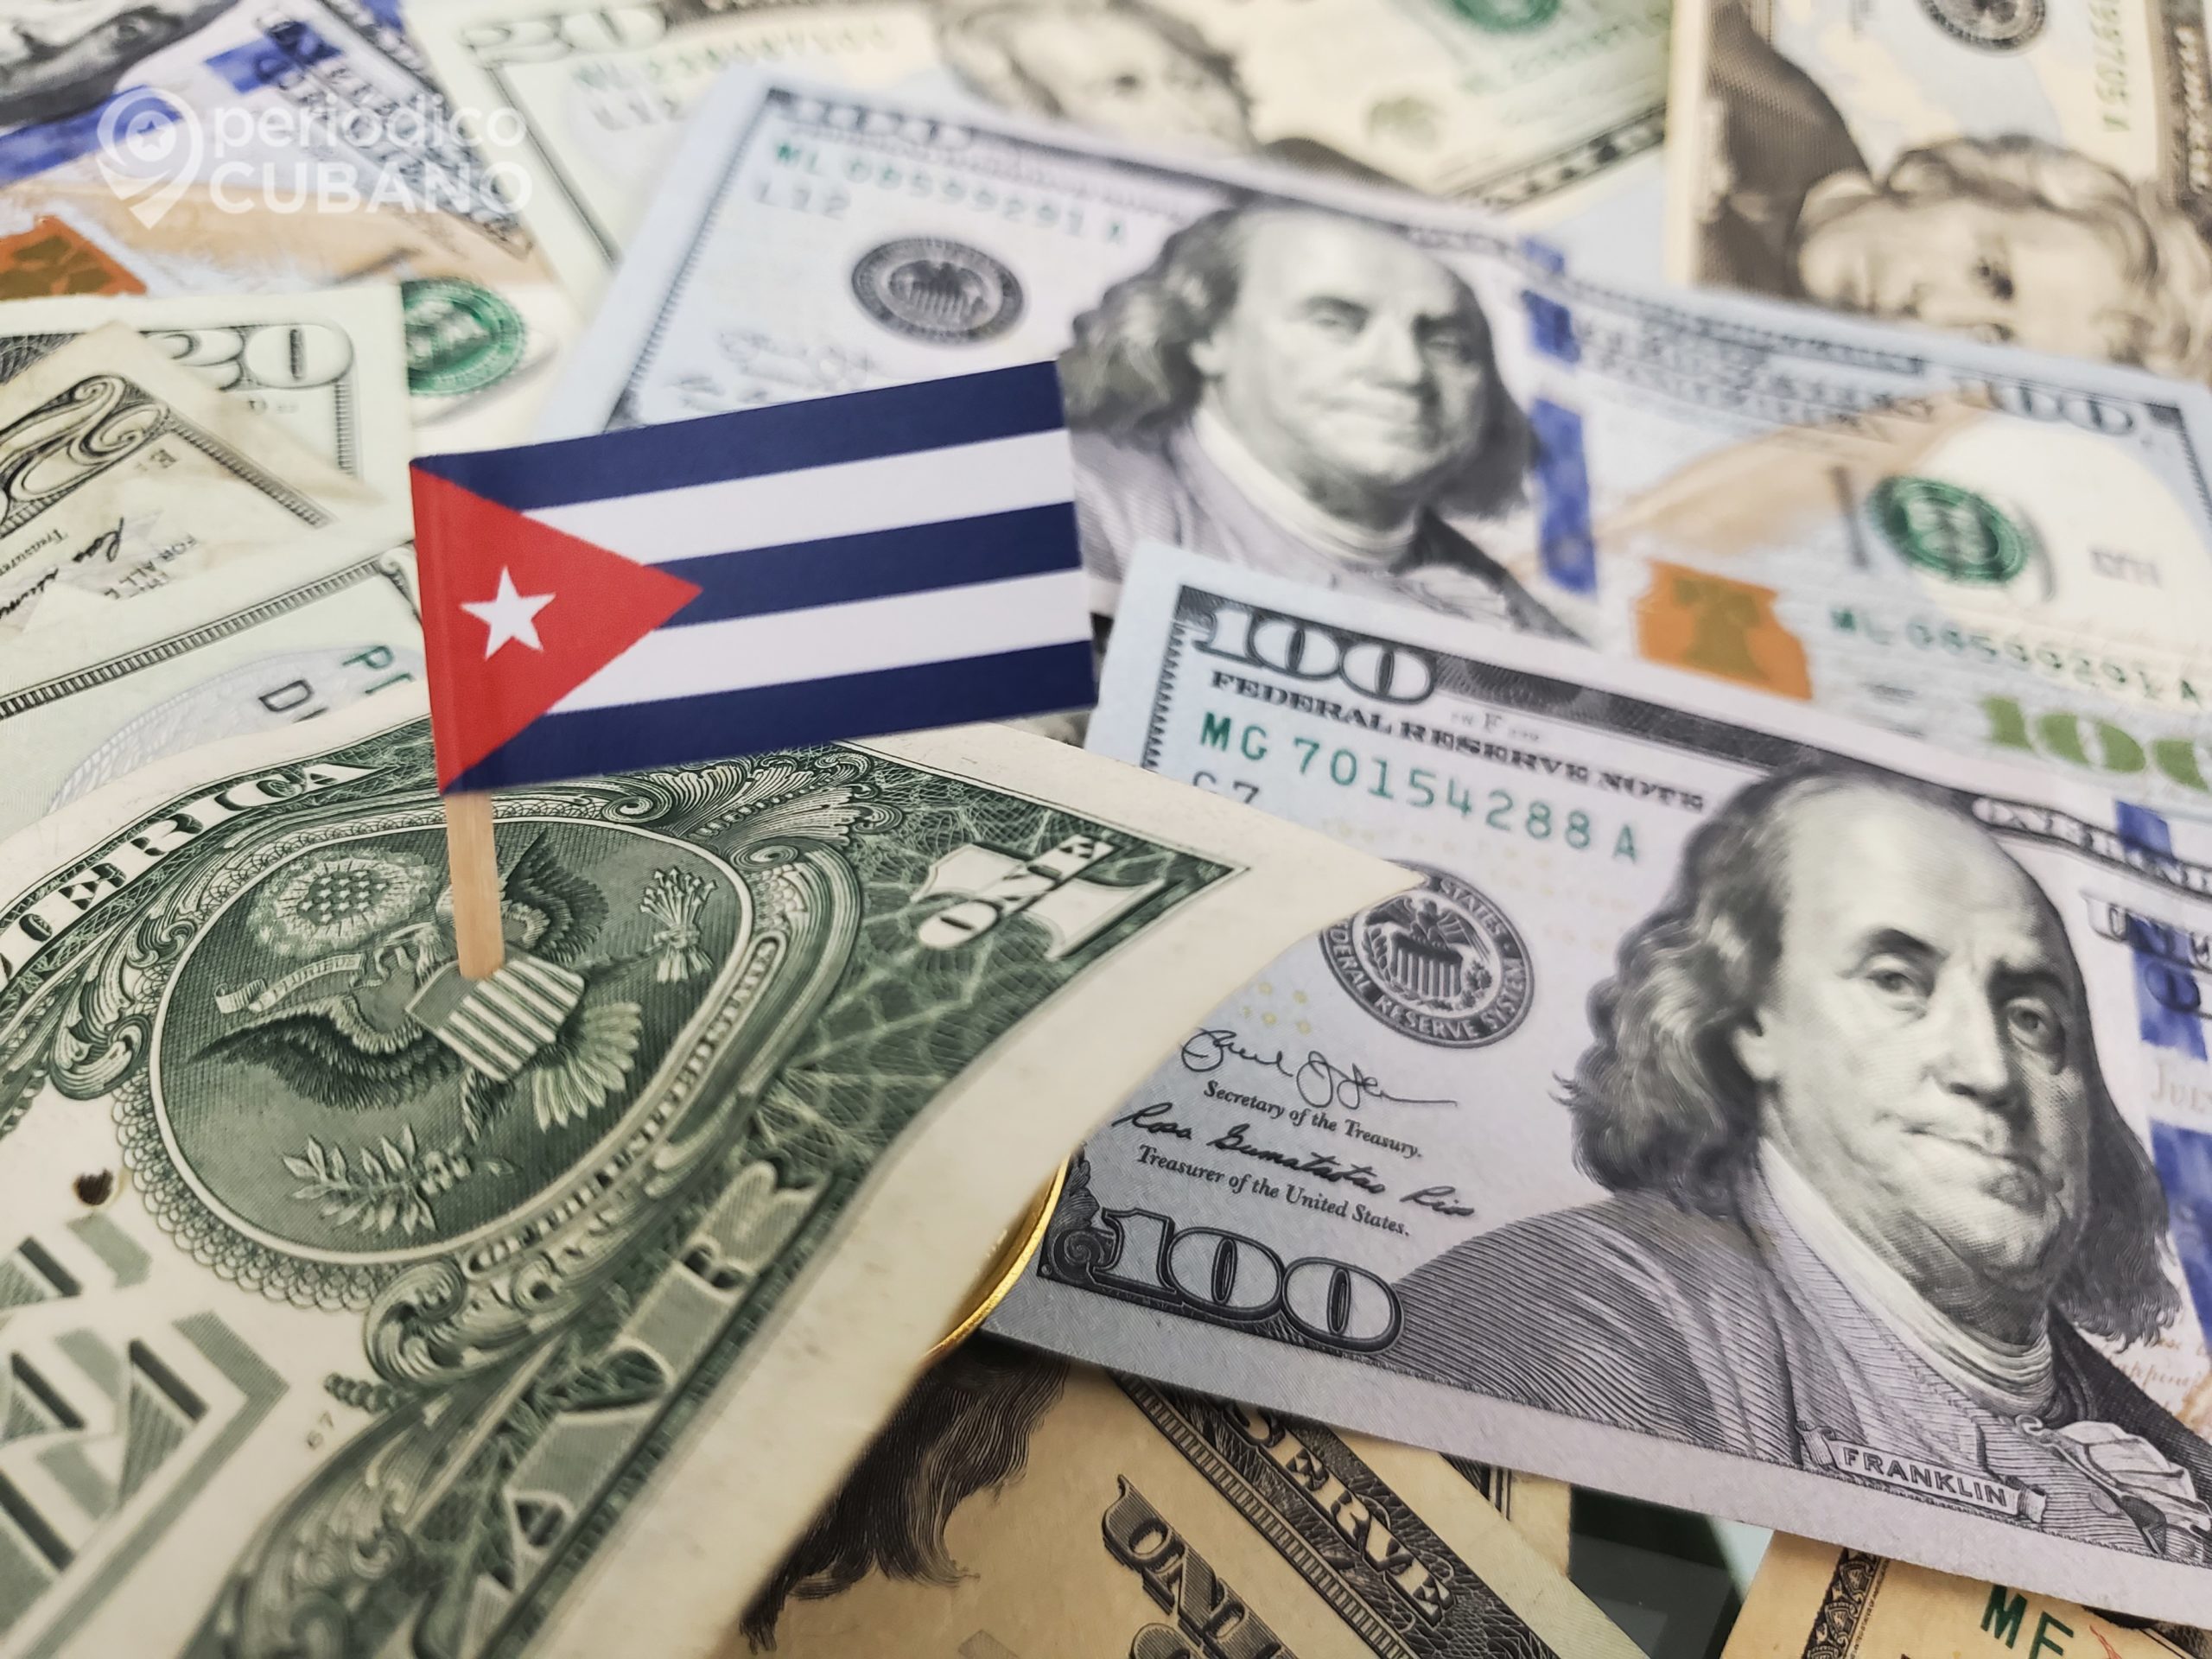 Gobierno cubano encarcelará a quienes reciban financiamiento desde el extranjero